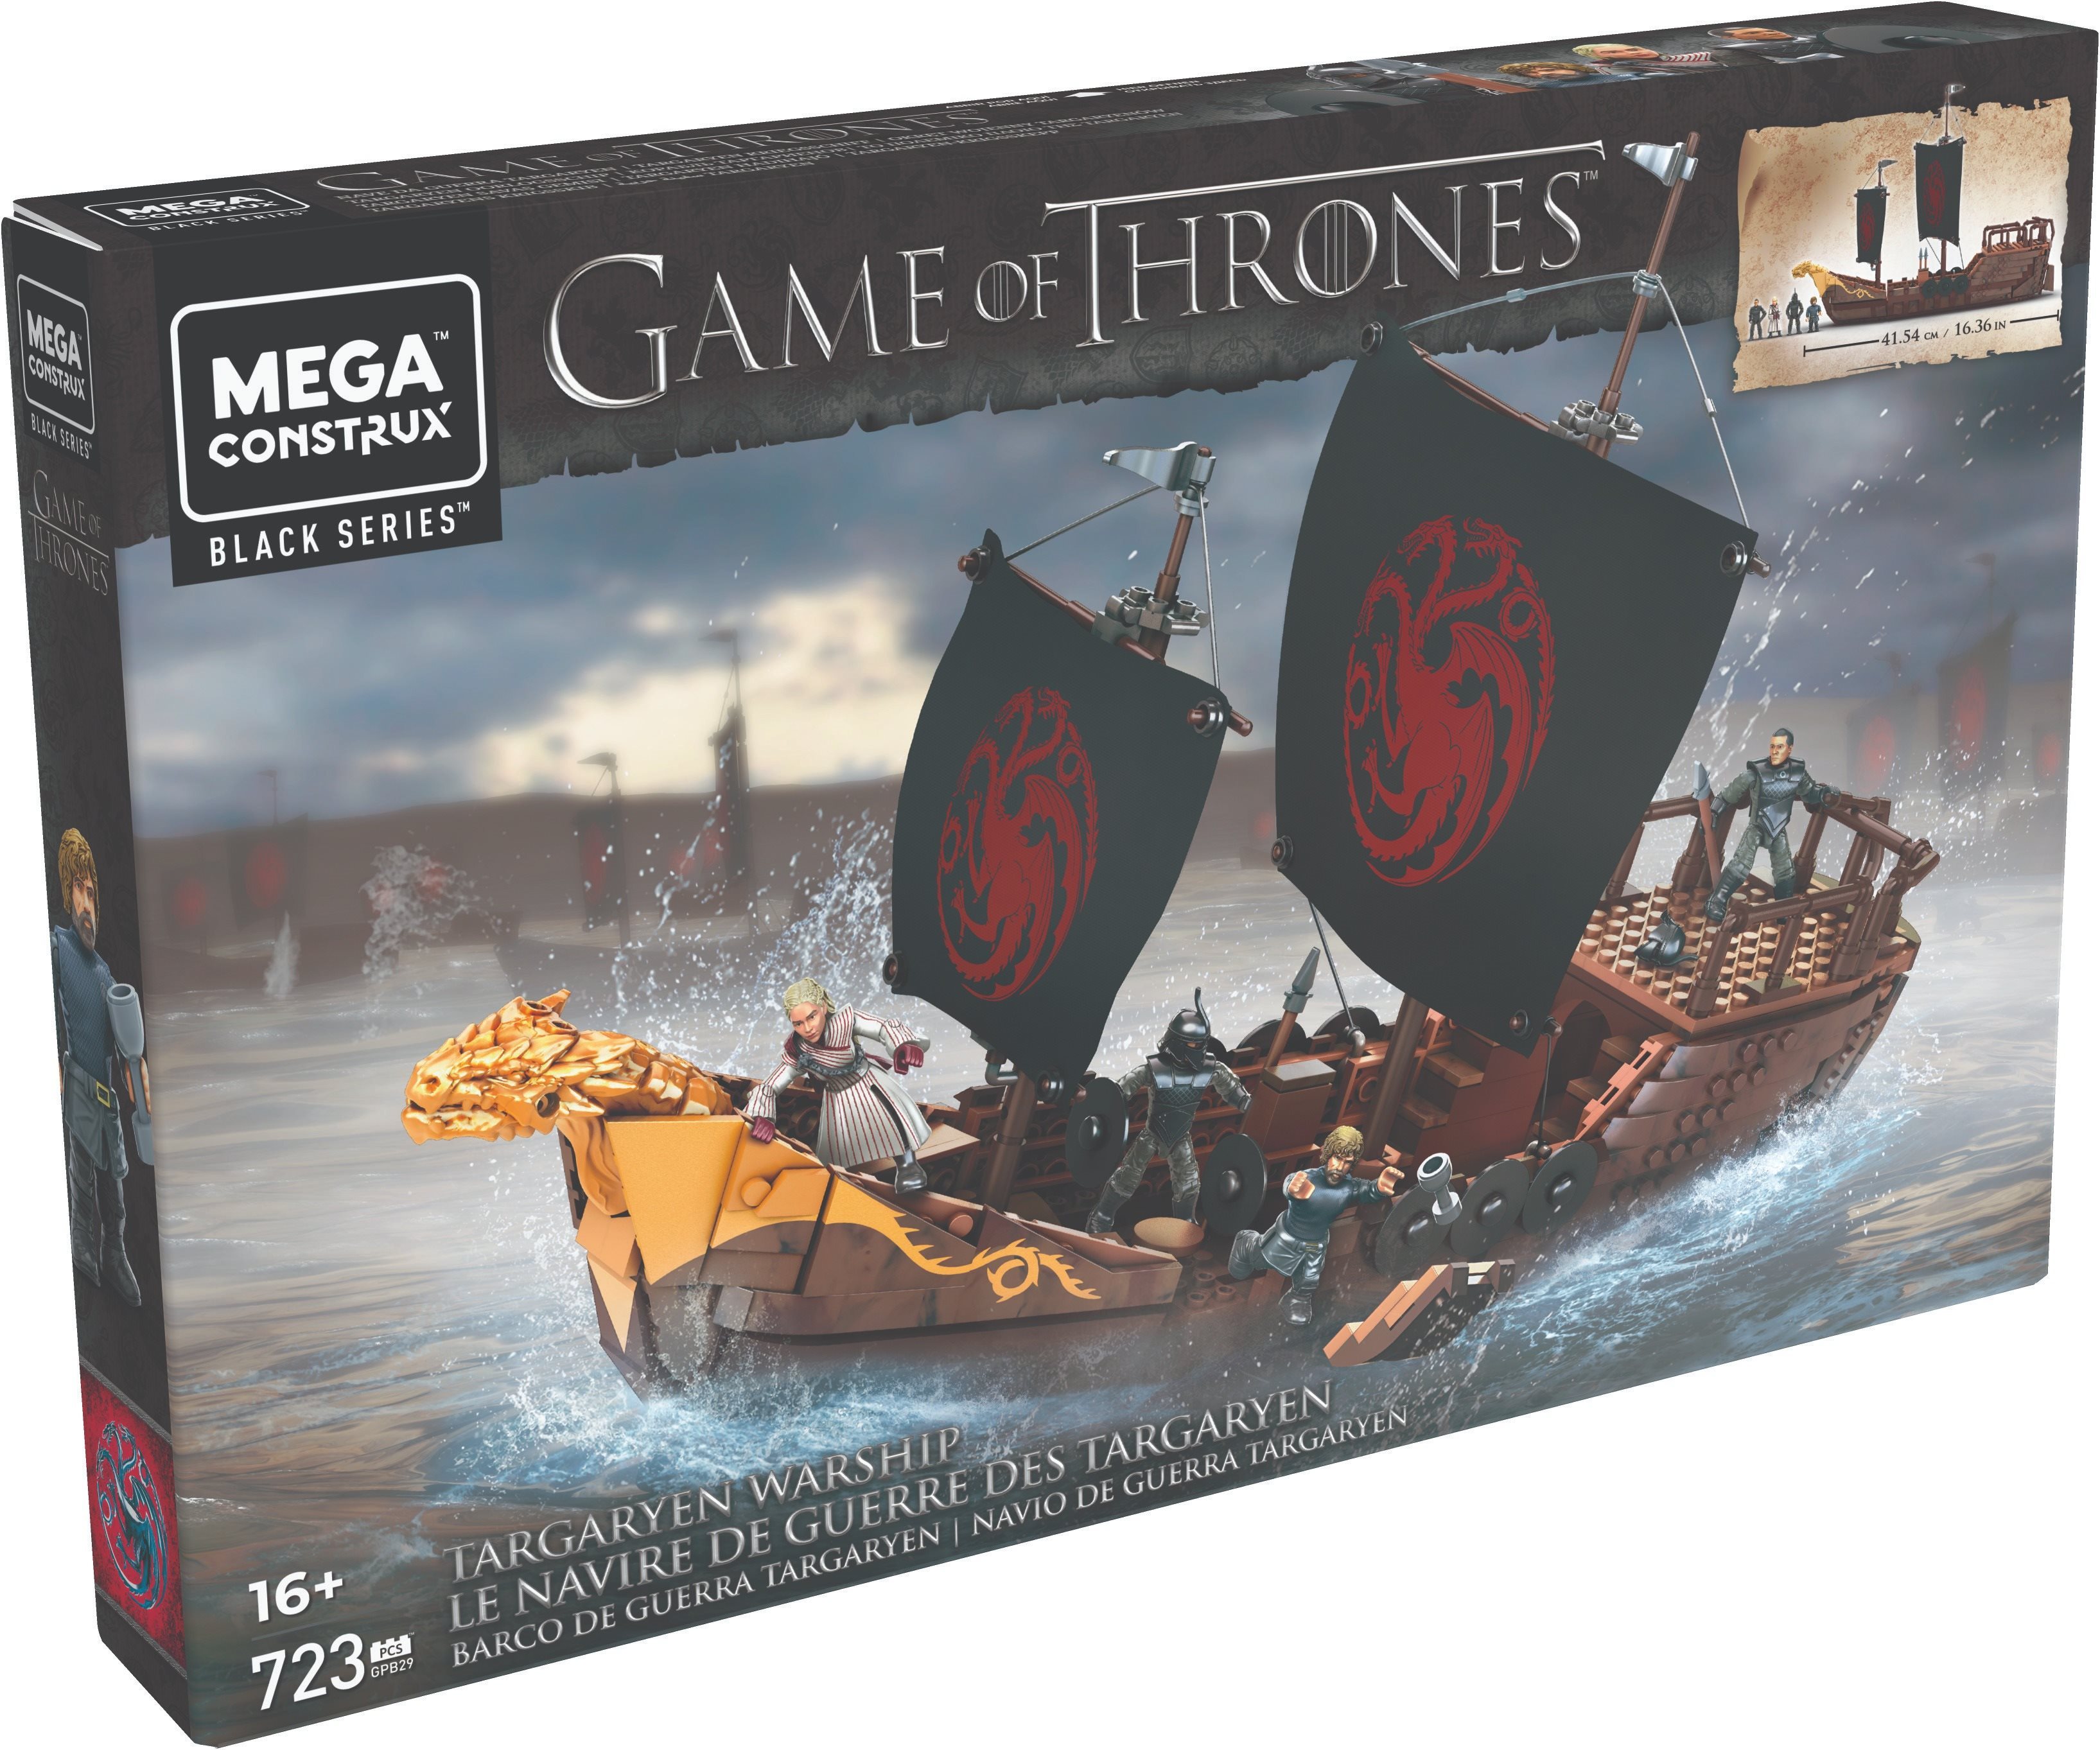 Building Set Mega Bloks Game of Thrones Targaryen ship Packaging/box